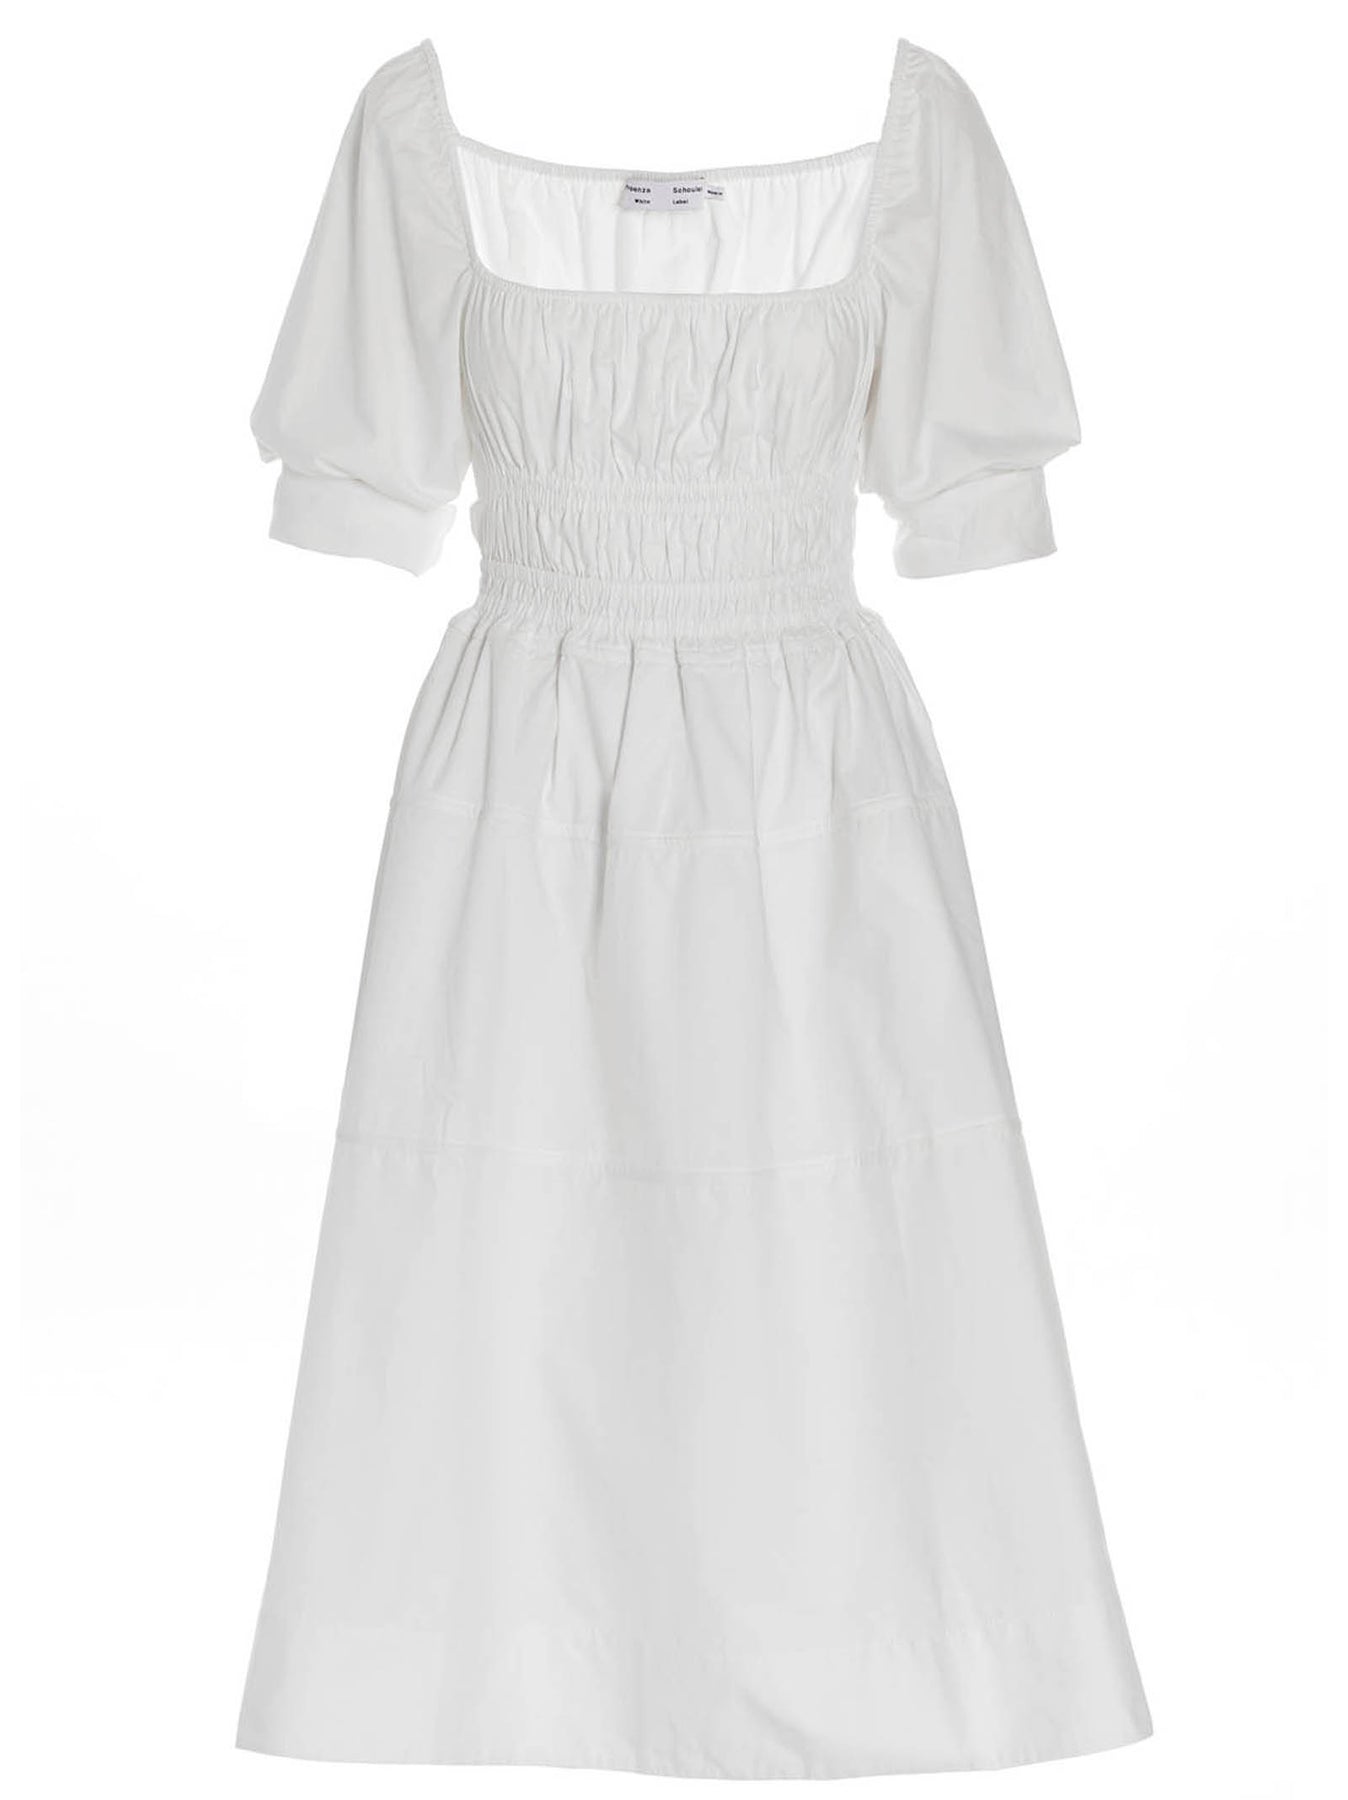 PROENZA SCHOULER WHITE LABEL POPLIN DRESS